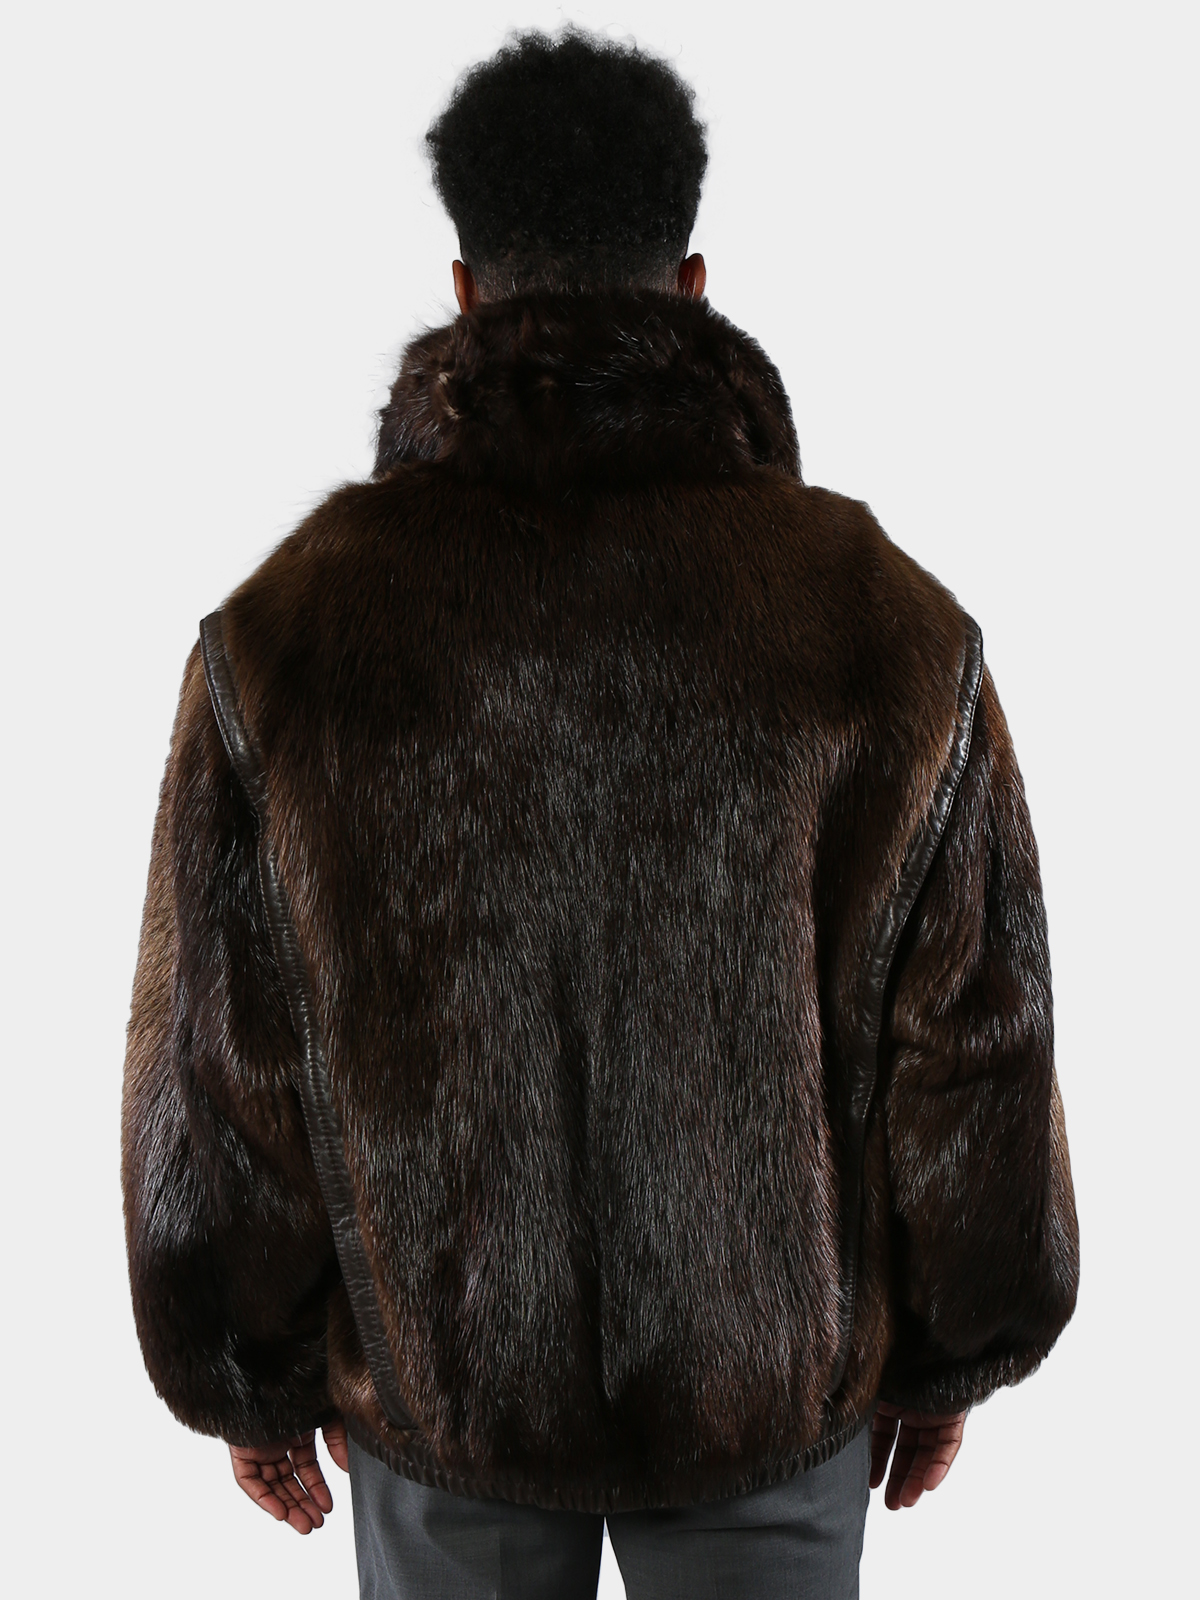 Natural Beaver Fur Jacket (Men's Large) - Estate Furs